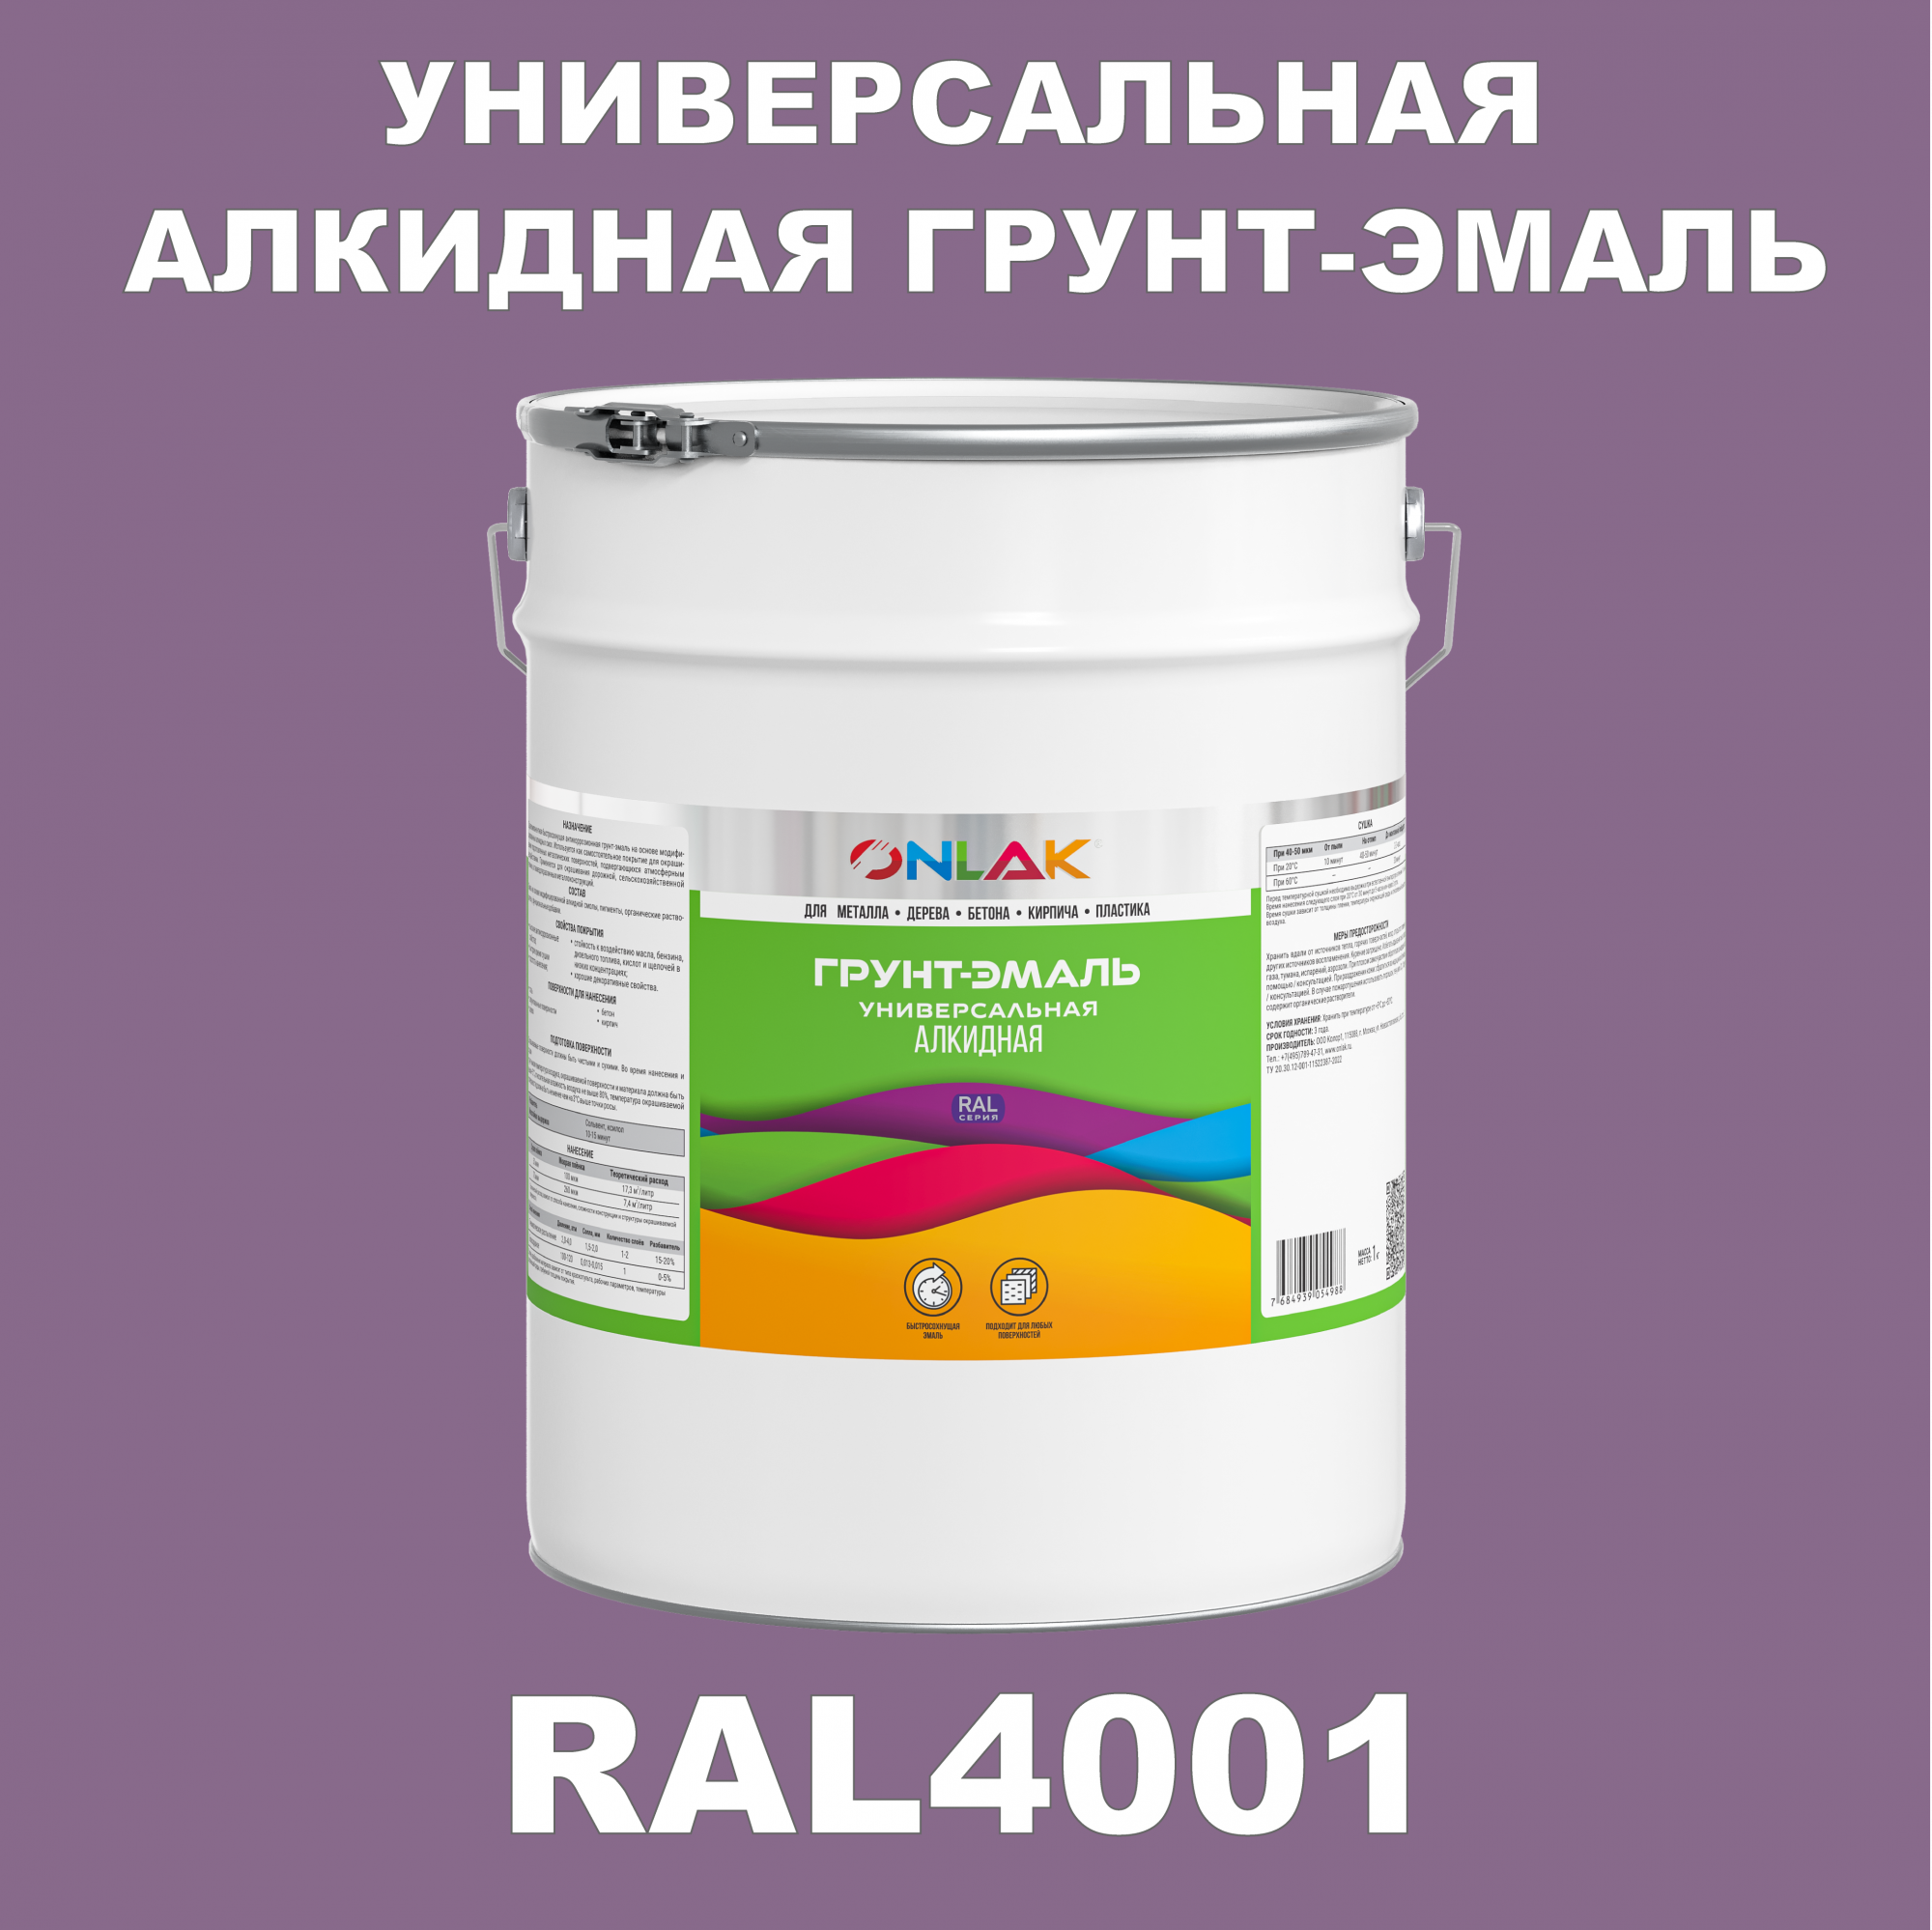 Грунт-эмаль ONLAK 1К RAL4001 антикоррозионная алкидная по металлу по ржавчине 20 кг антикоррозионная грунт эмаль onlak ral 4002 фиолетовый 720 мл